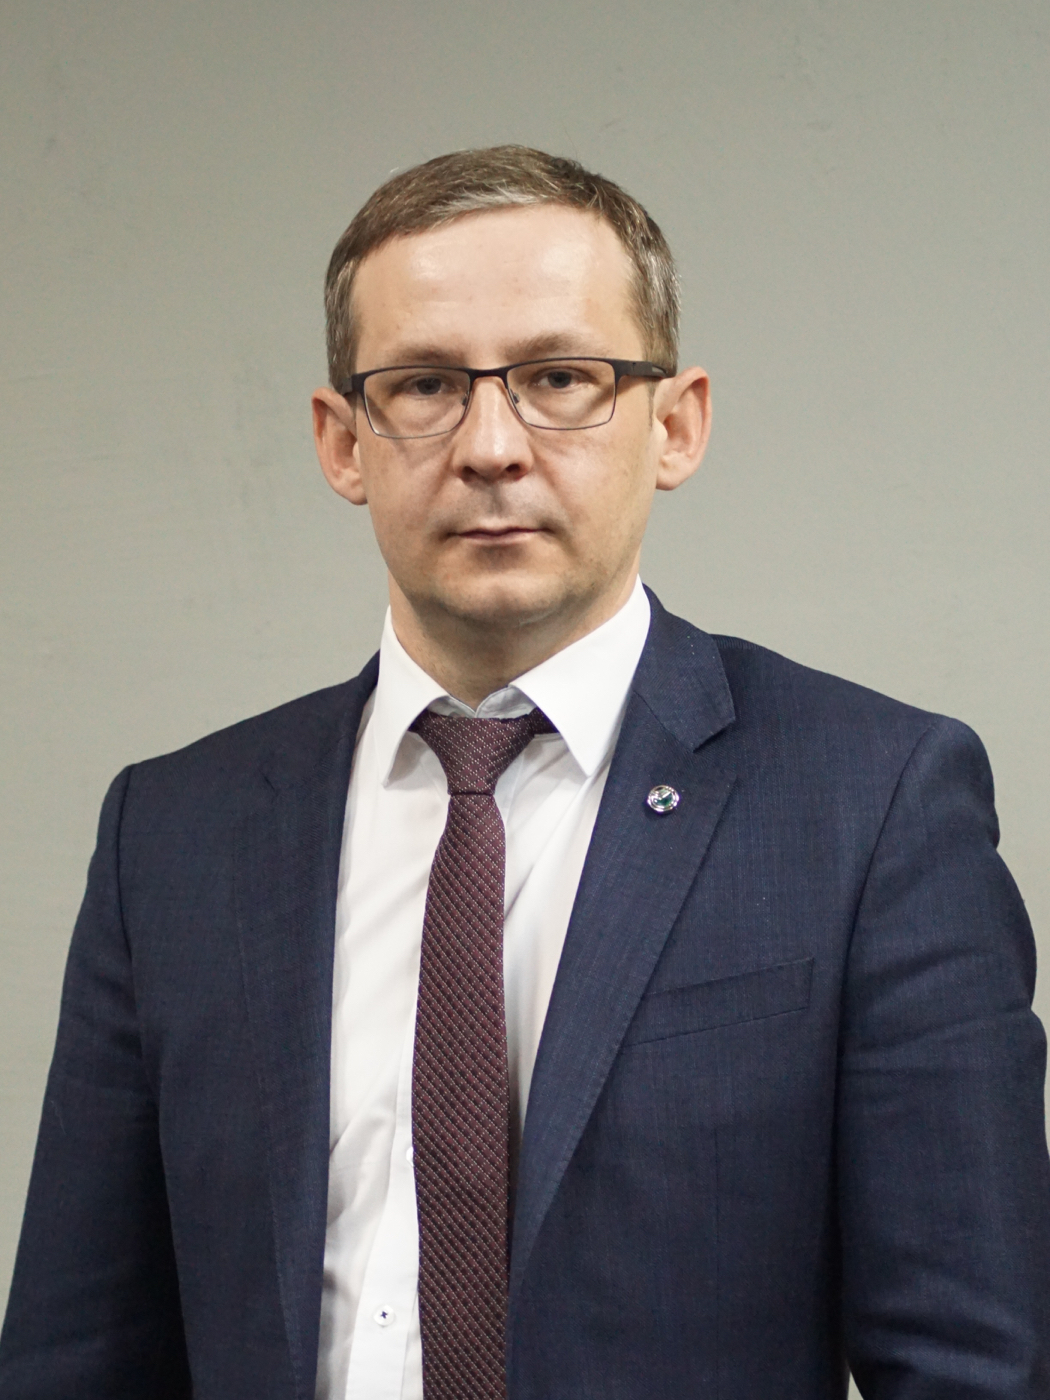 Лебедев Вячеслав Петрович — директор управления по работе с партнерами Северо-Западного банка Сбербанка 